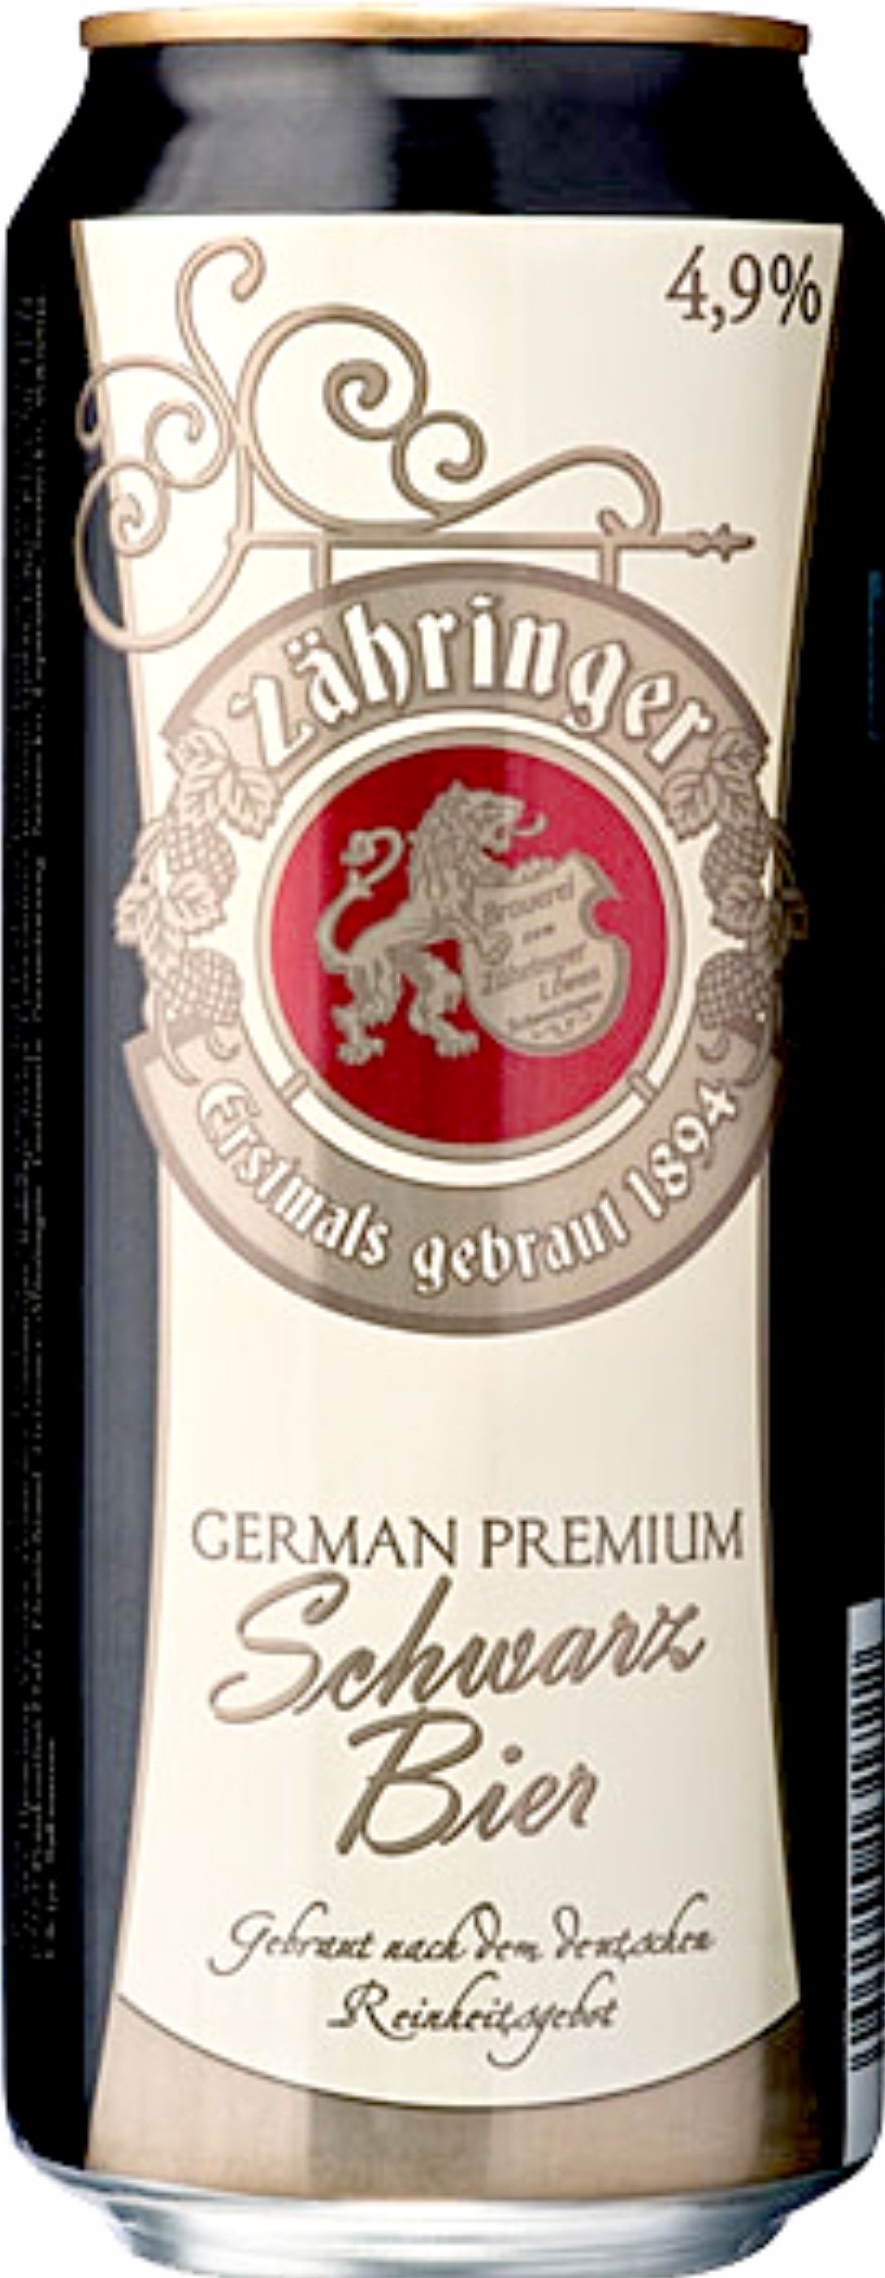 Пиво Царингер Шварцбир темное 4,9% ж/б 0,5л